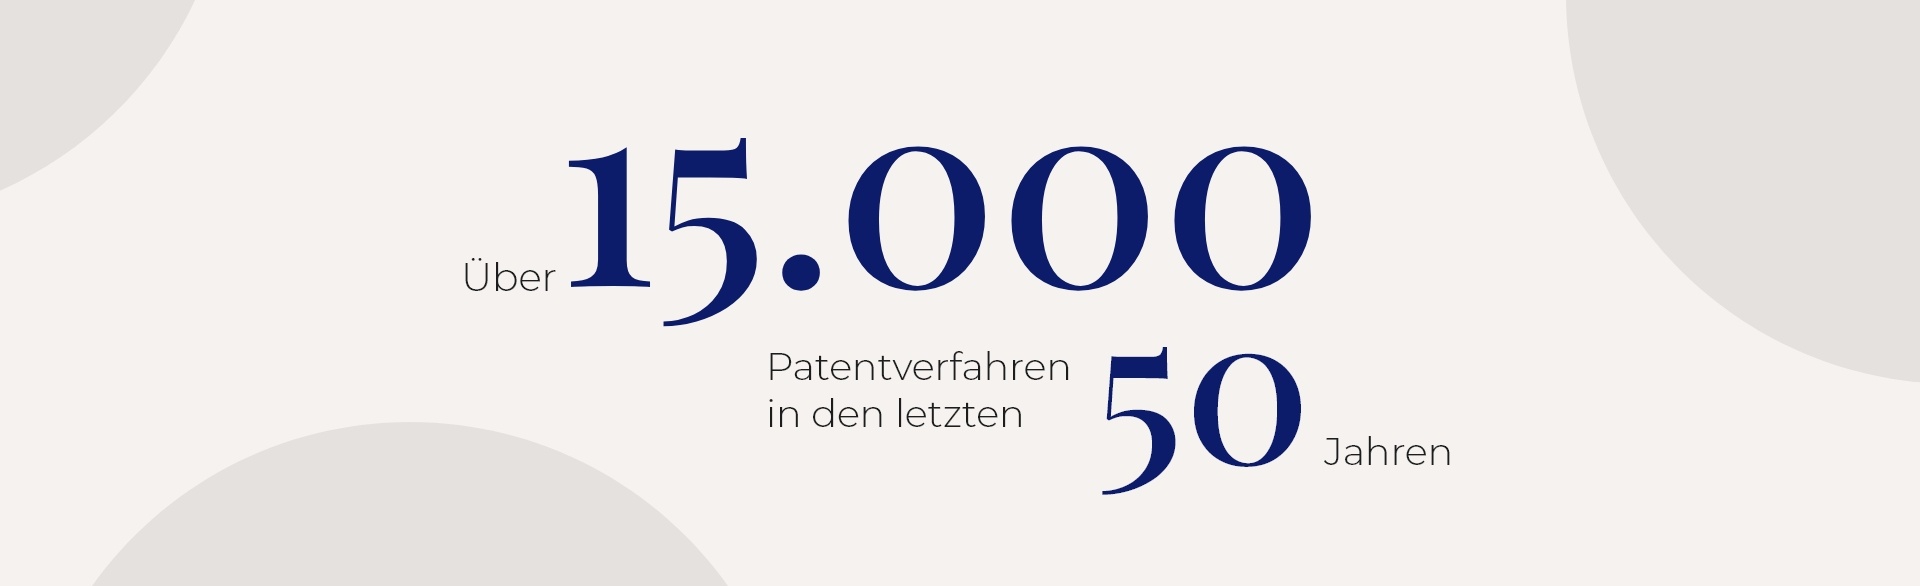 Über 15.000 Patentverfahren in den letzten 50 Jahren